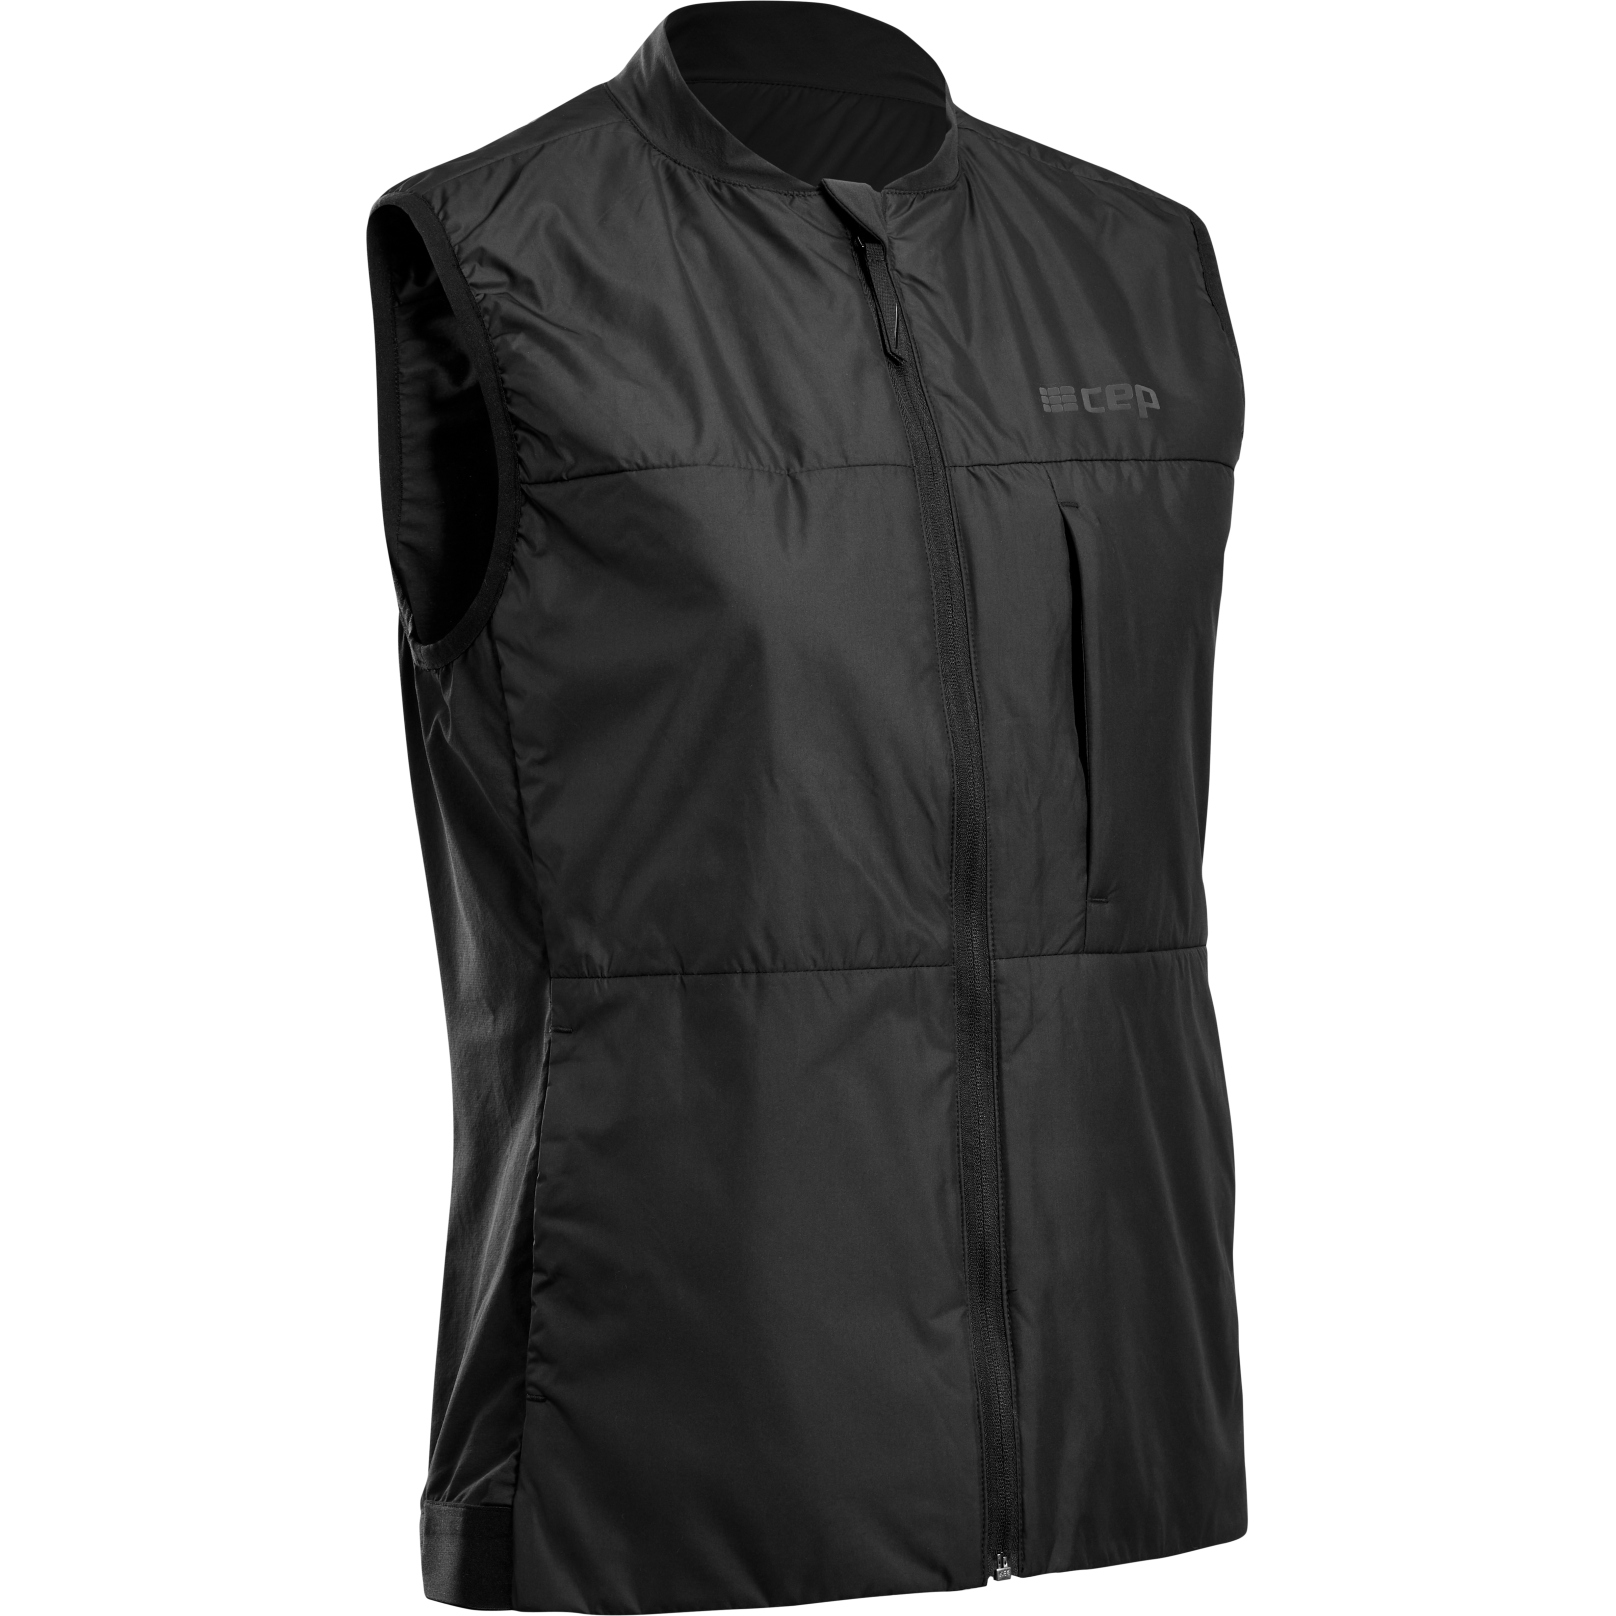 Productfoto van CEP Cold Weather Vest Dames - zwart